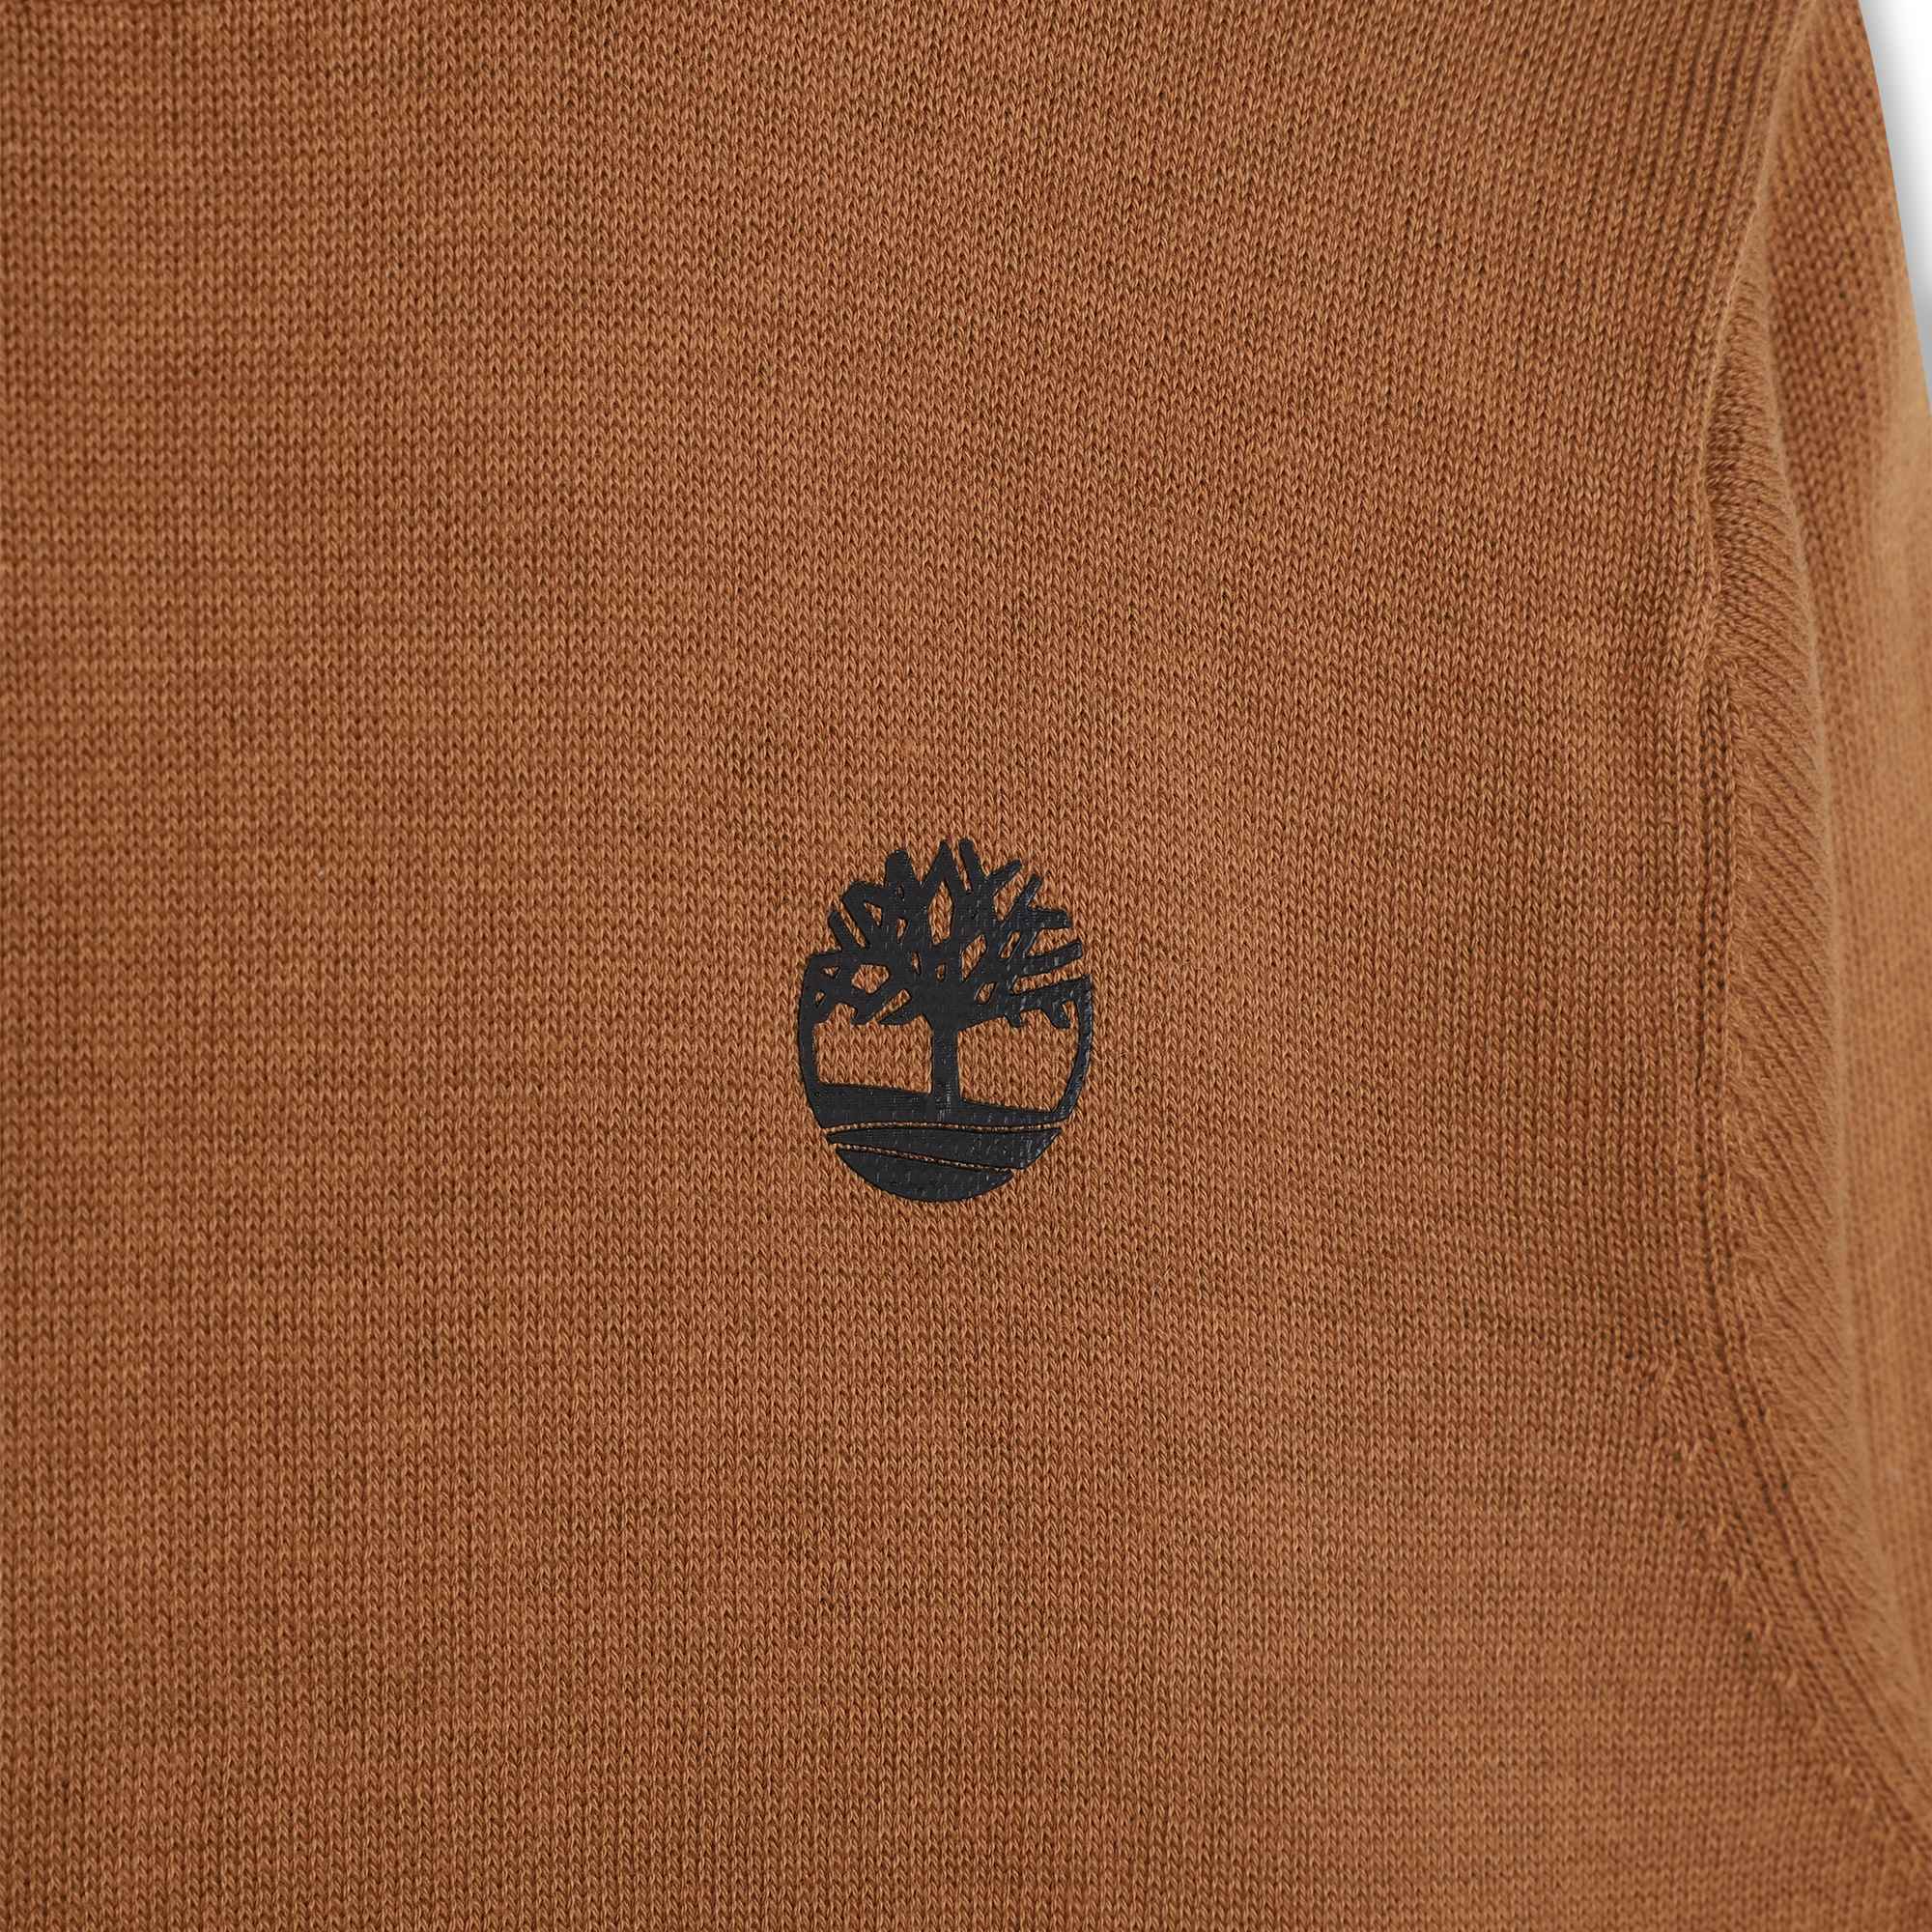 Baumwoll-pullover mit logo TIMBERLAND Für JUNGE